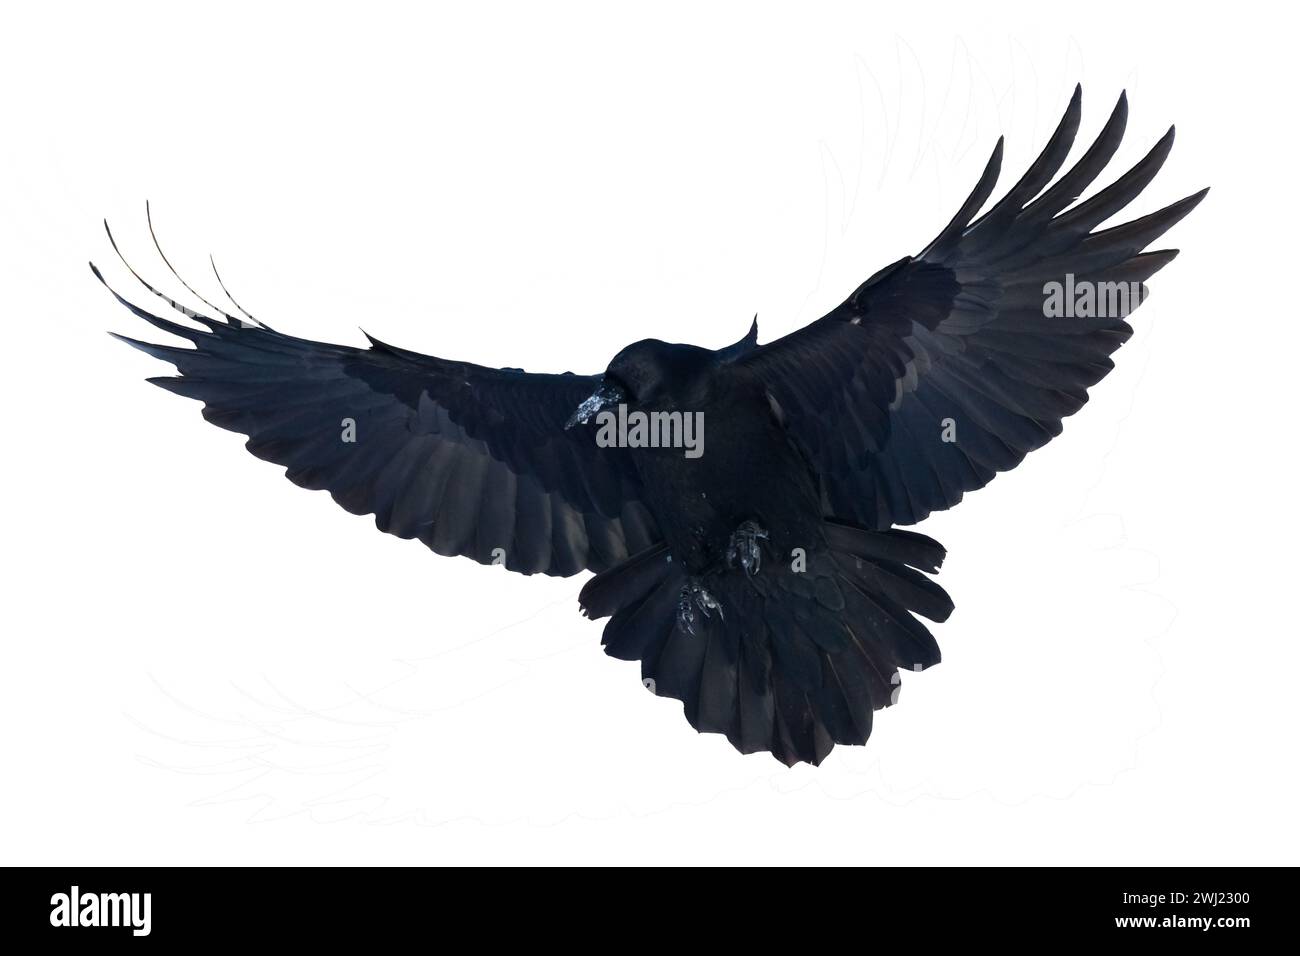 Vögel fliegen Raben isoliert auf weißem Hintergrund Corvus corax. Halloween-Silhouette eines großen schwarzen Vogels im Flug Stockfoto